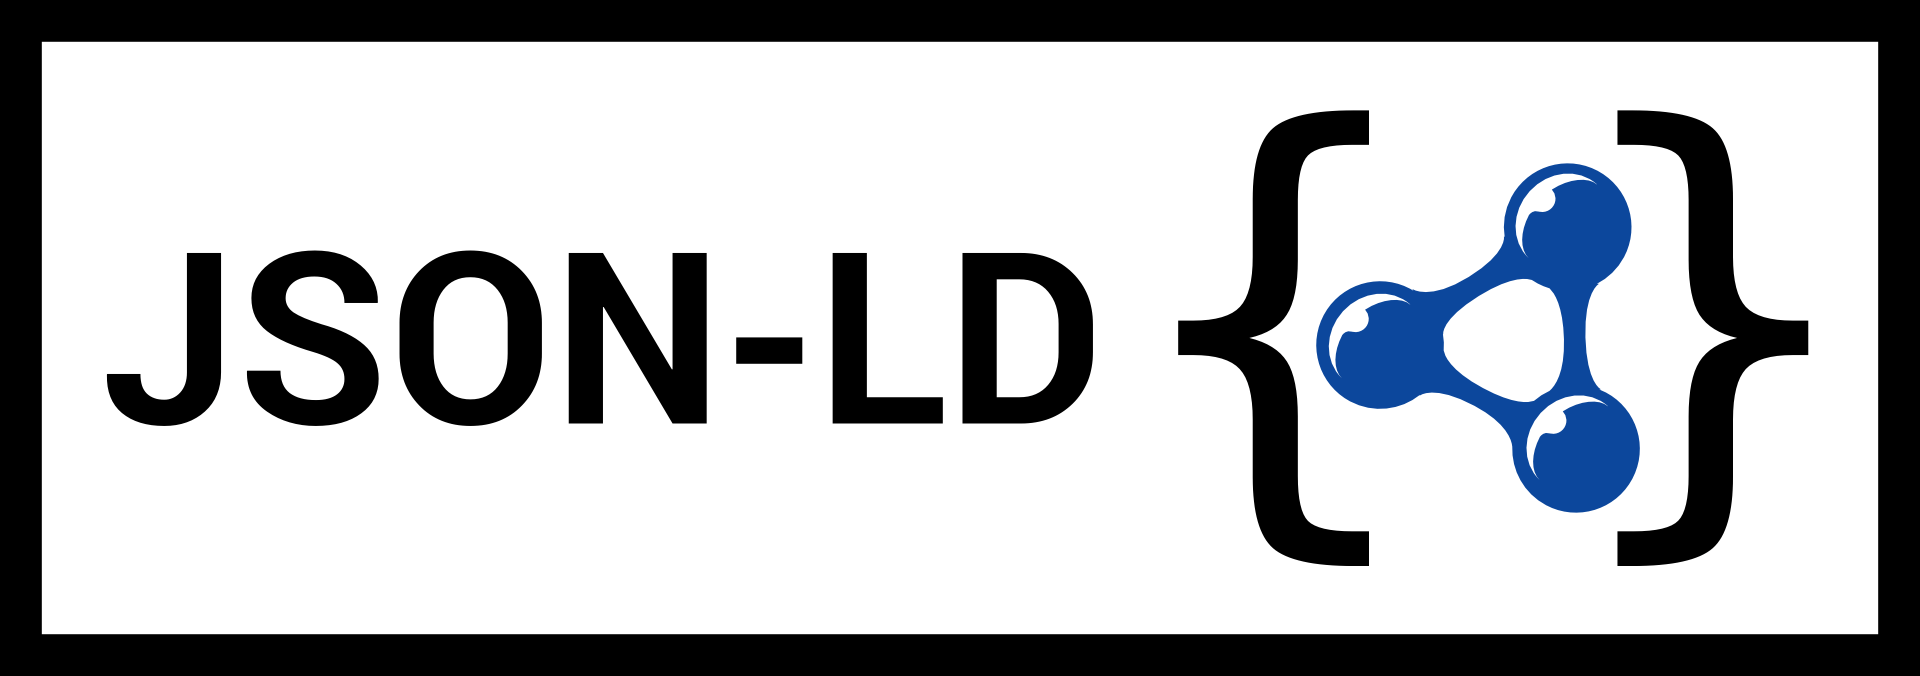 LD Logo - JSON-LD Images/Logos